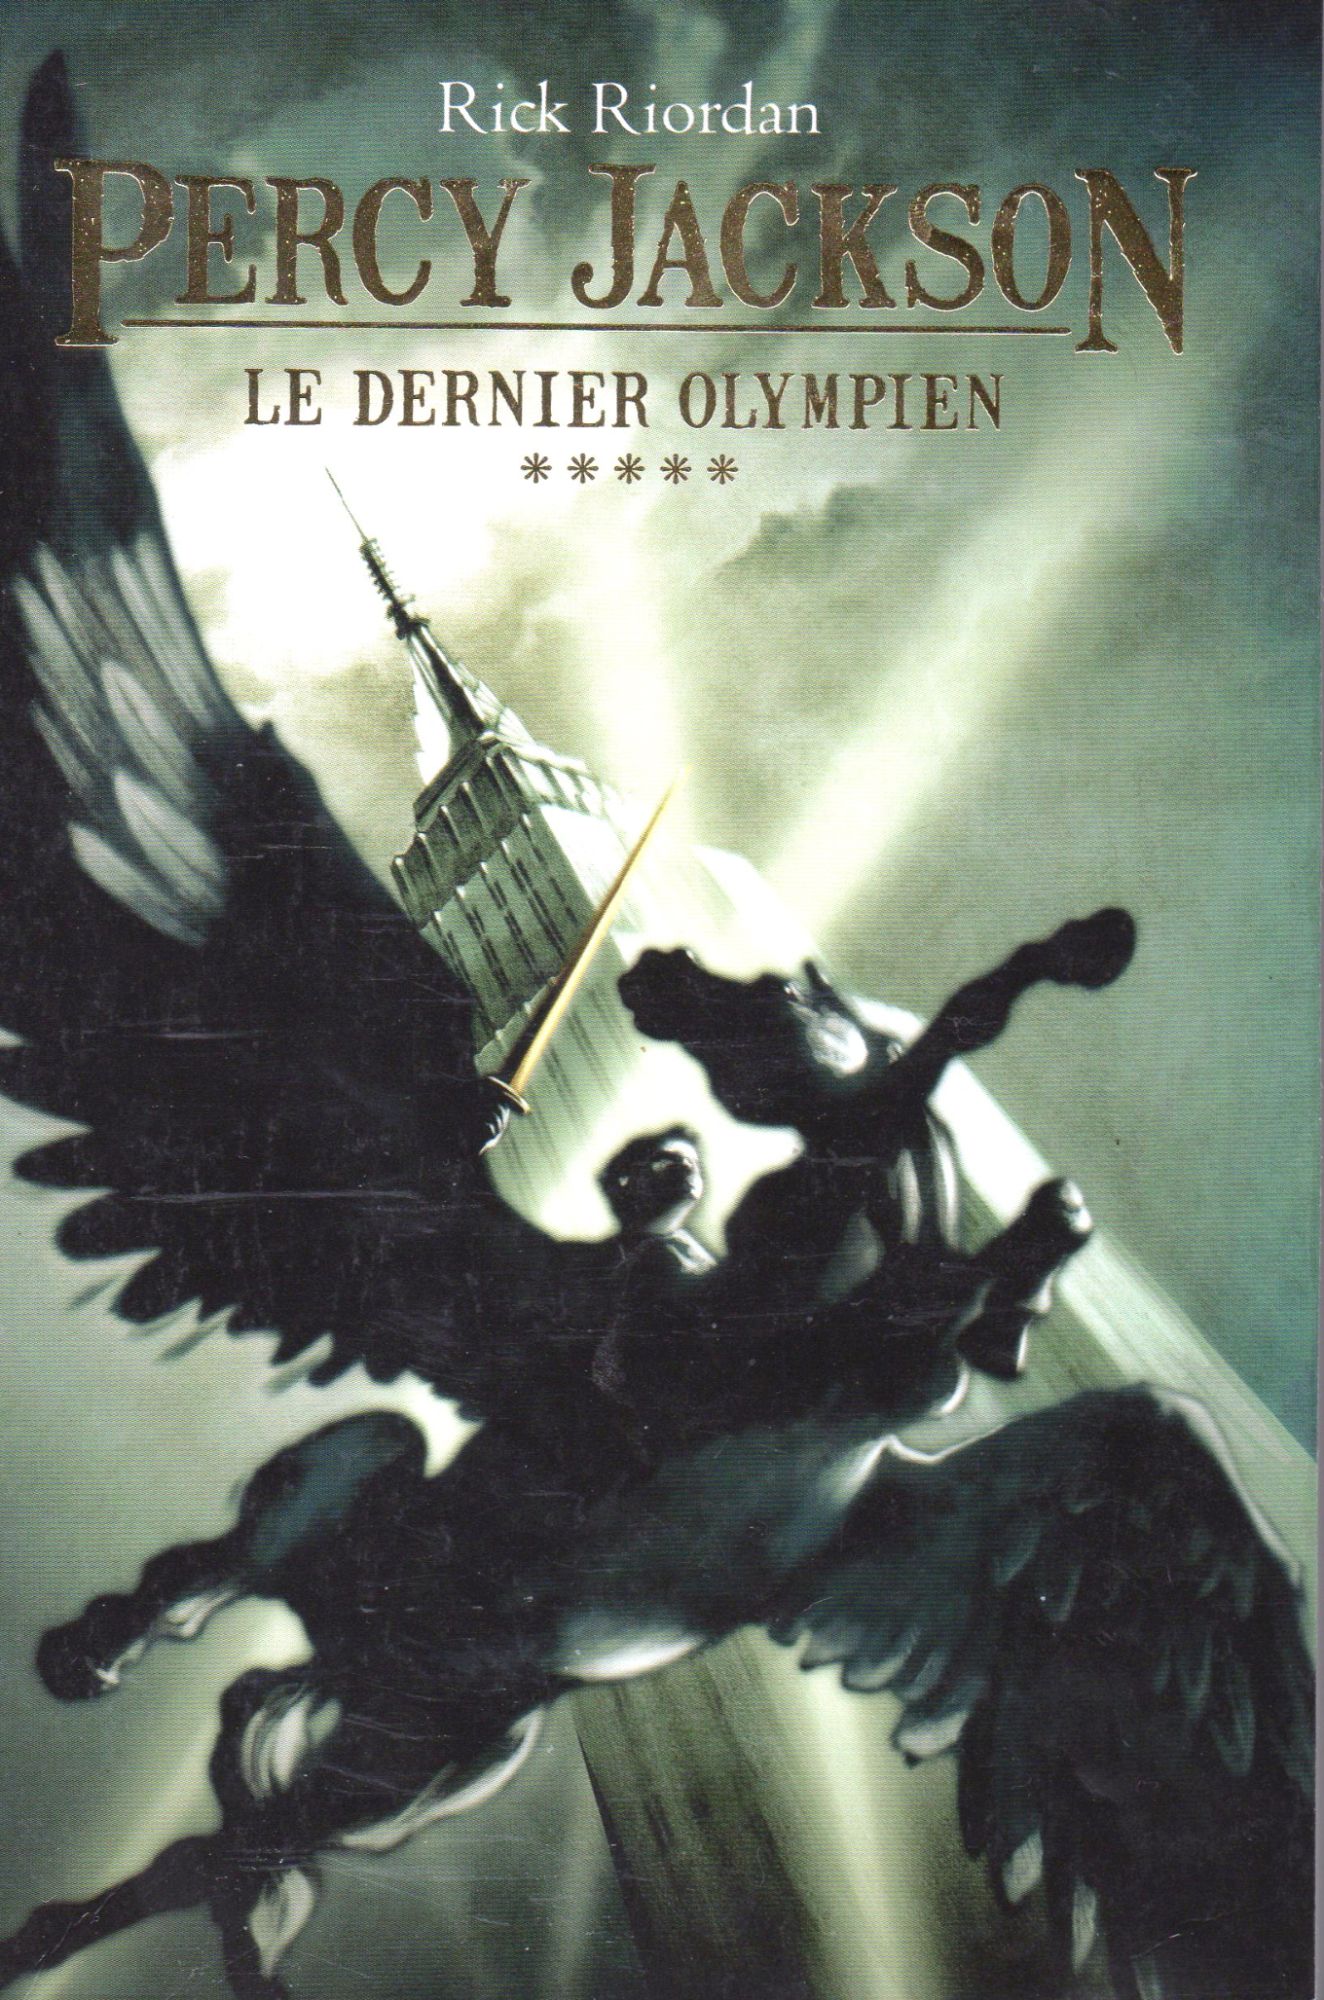 Percy Jackson - Le Dernier Olympien